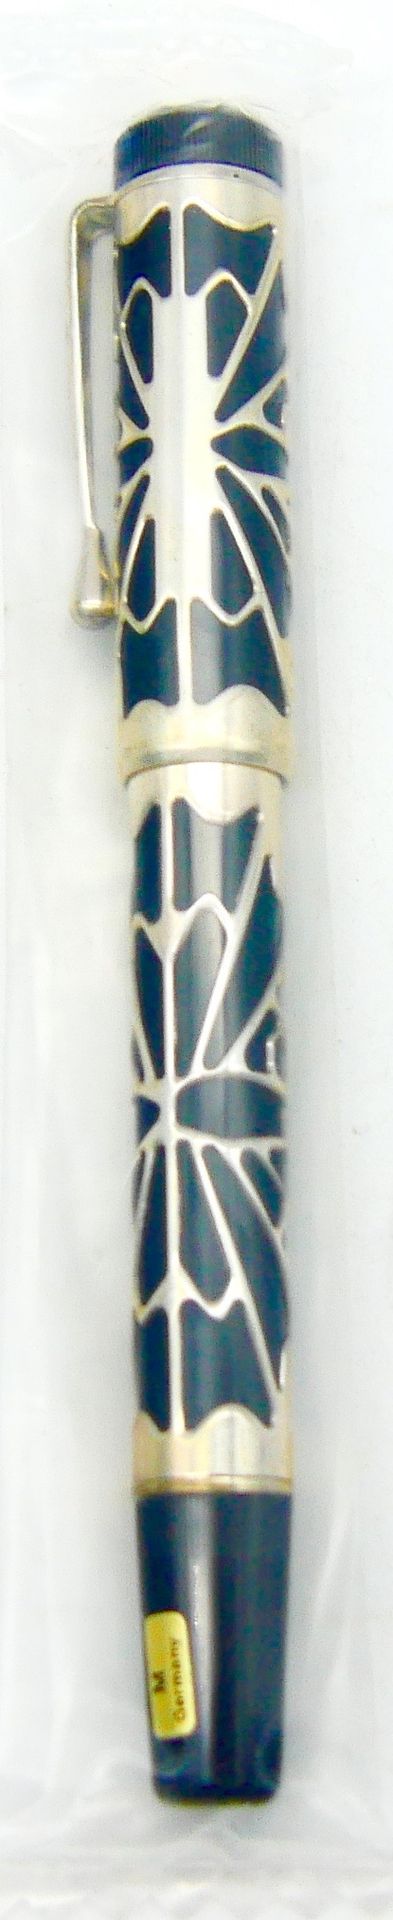 Null 蒙特布朗

屋大维

黑色树脂钢笔，950/1000银色镶边，750/1000金色笔尖，活塞式系统

夹子上刻有Montblanc和925字样

编号&hellip;